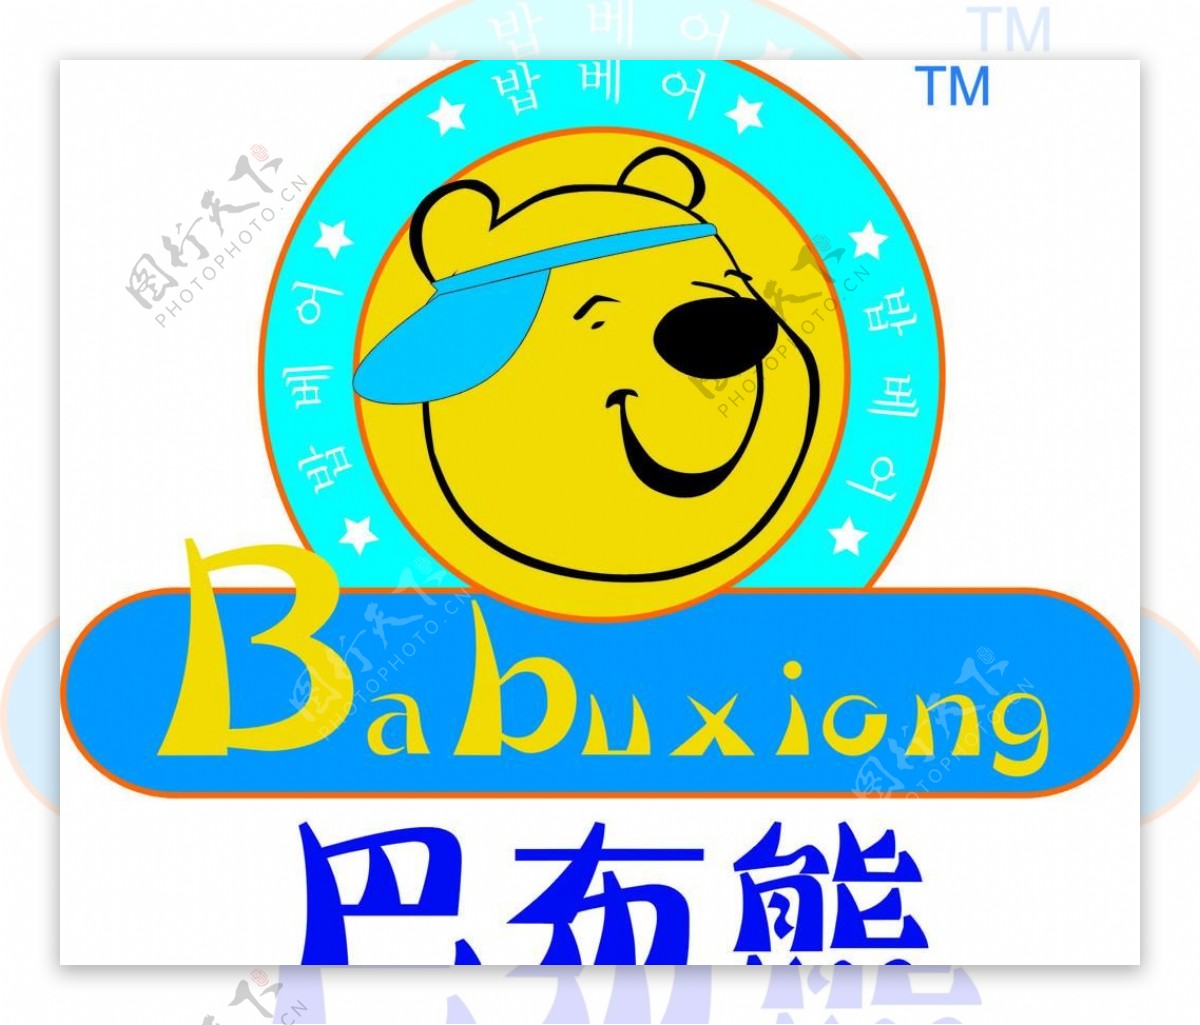 巴布熊logo图片